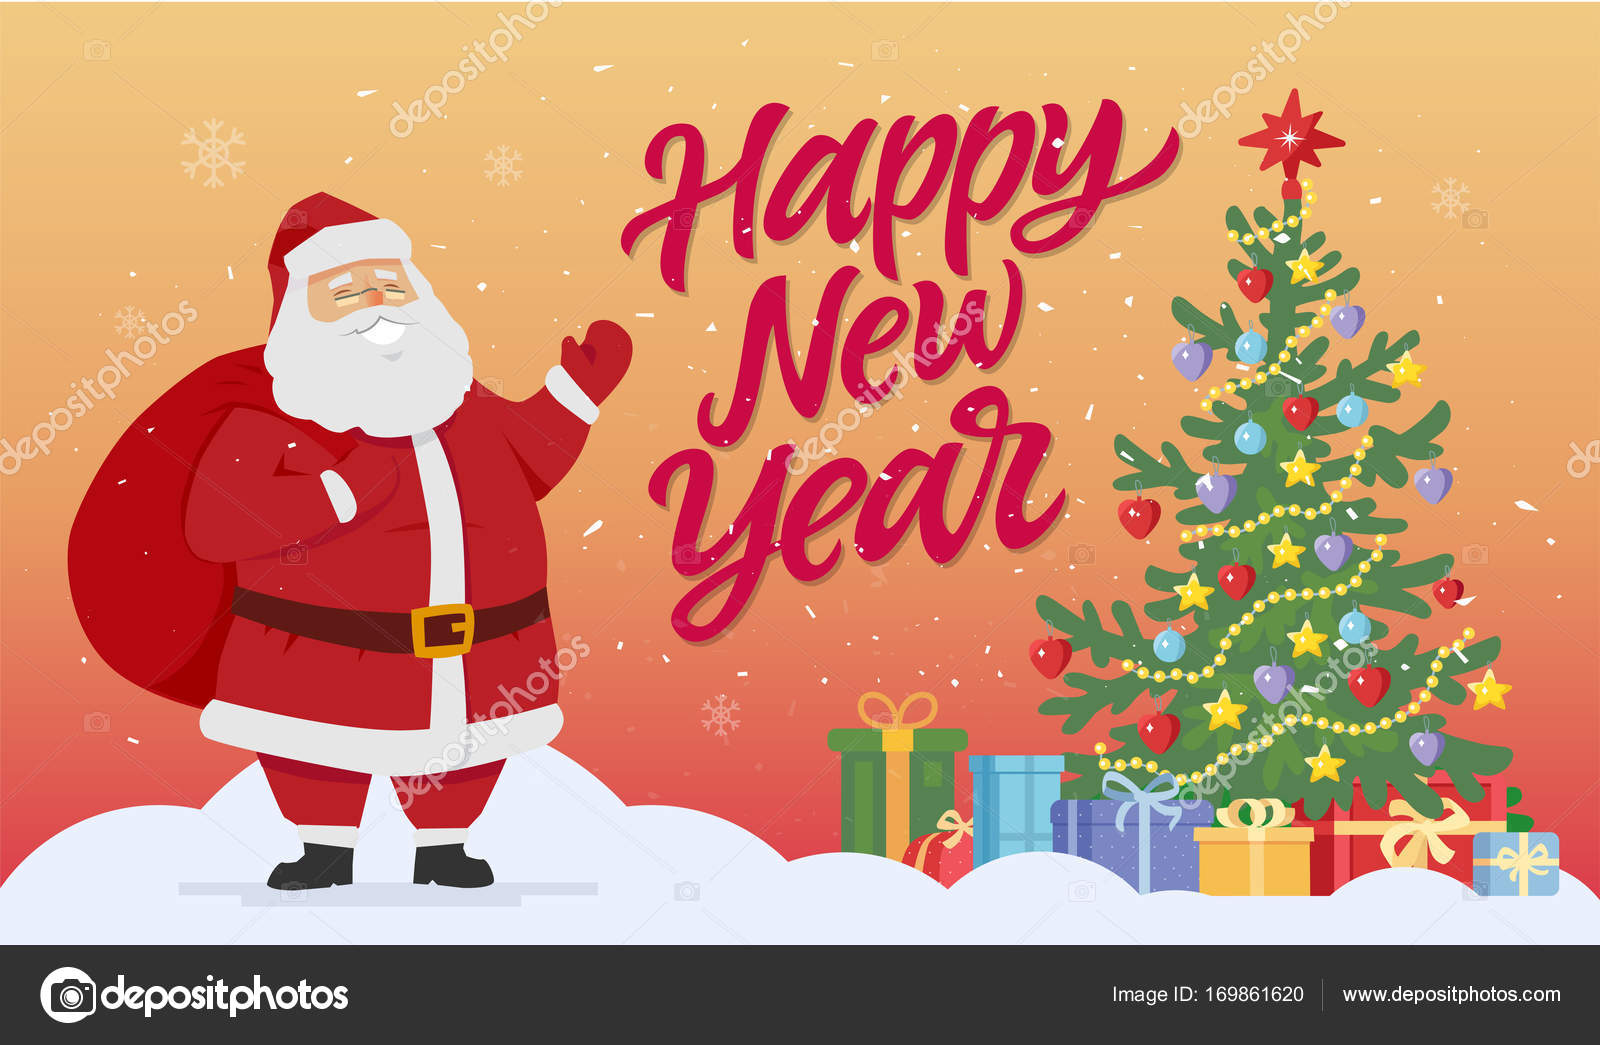 Santa con árbol de Navidad y regalos - ilustración de personajes de dibujos  animados modernos vector, gráfico vectorial ©  imagen  #169861620